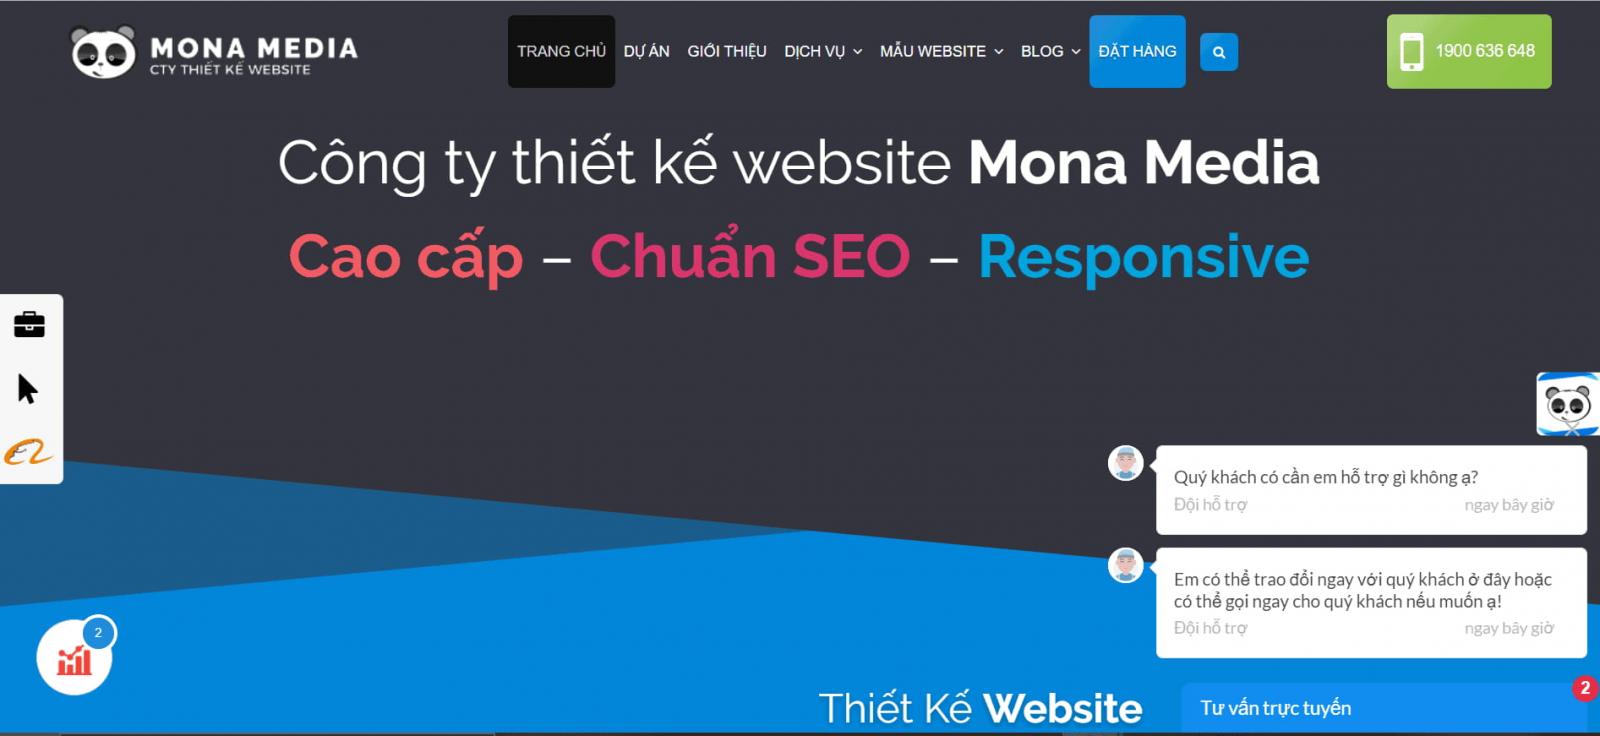 Thiết kế Web ở Cần Thơ - Mona Media